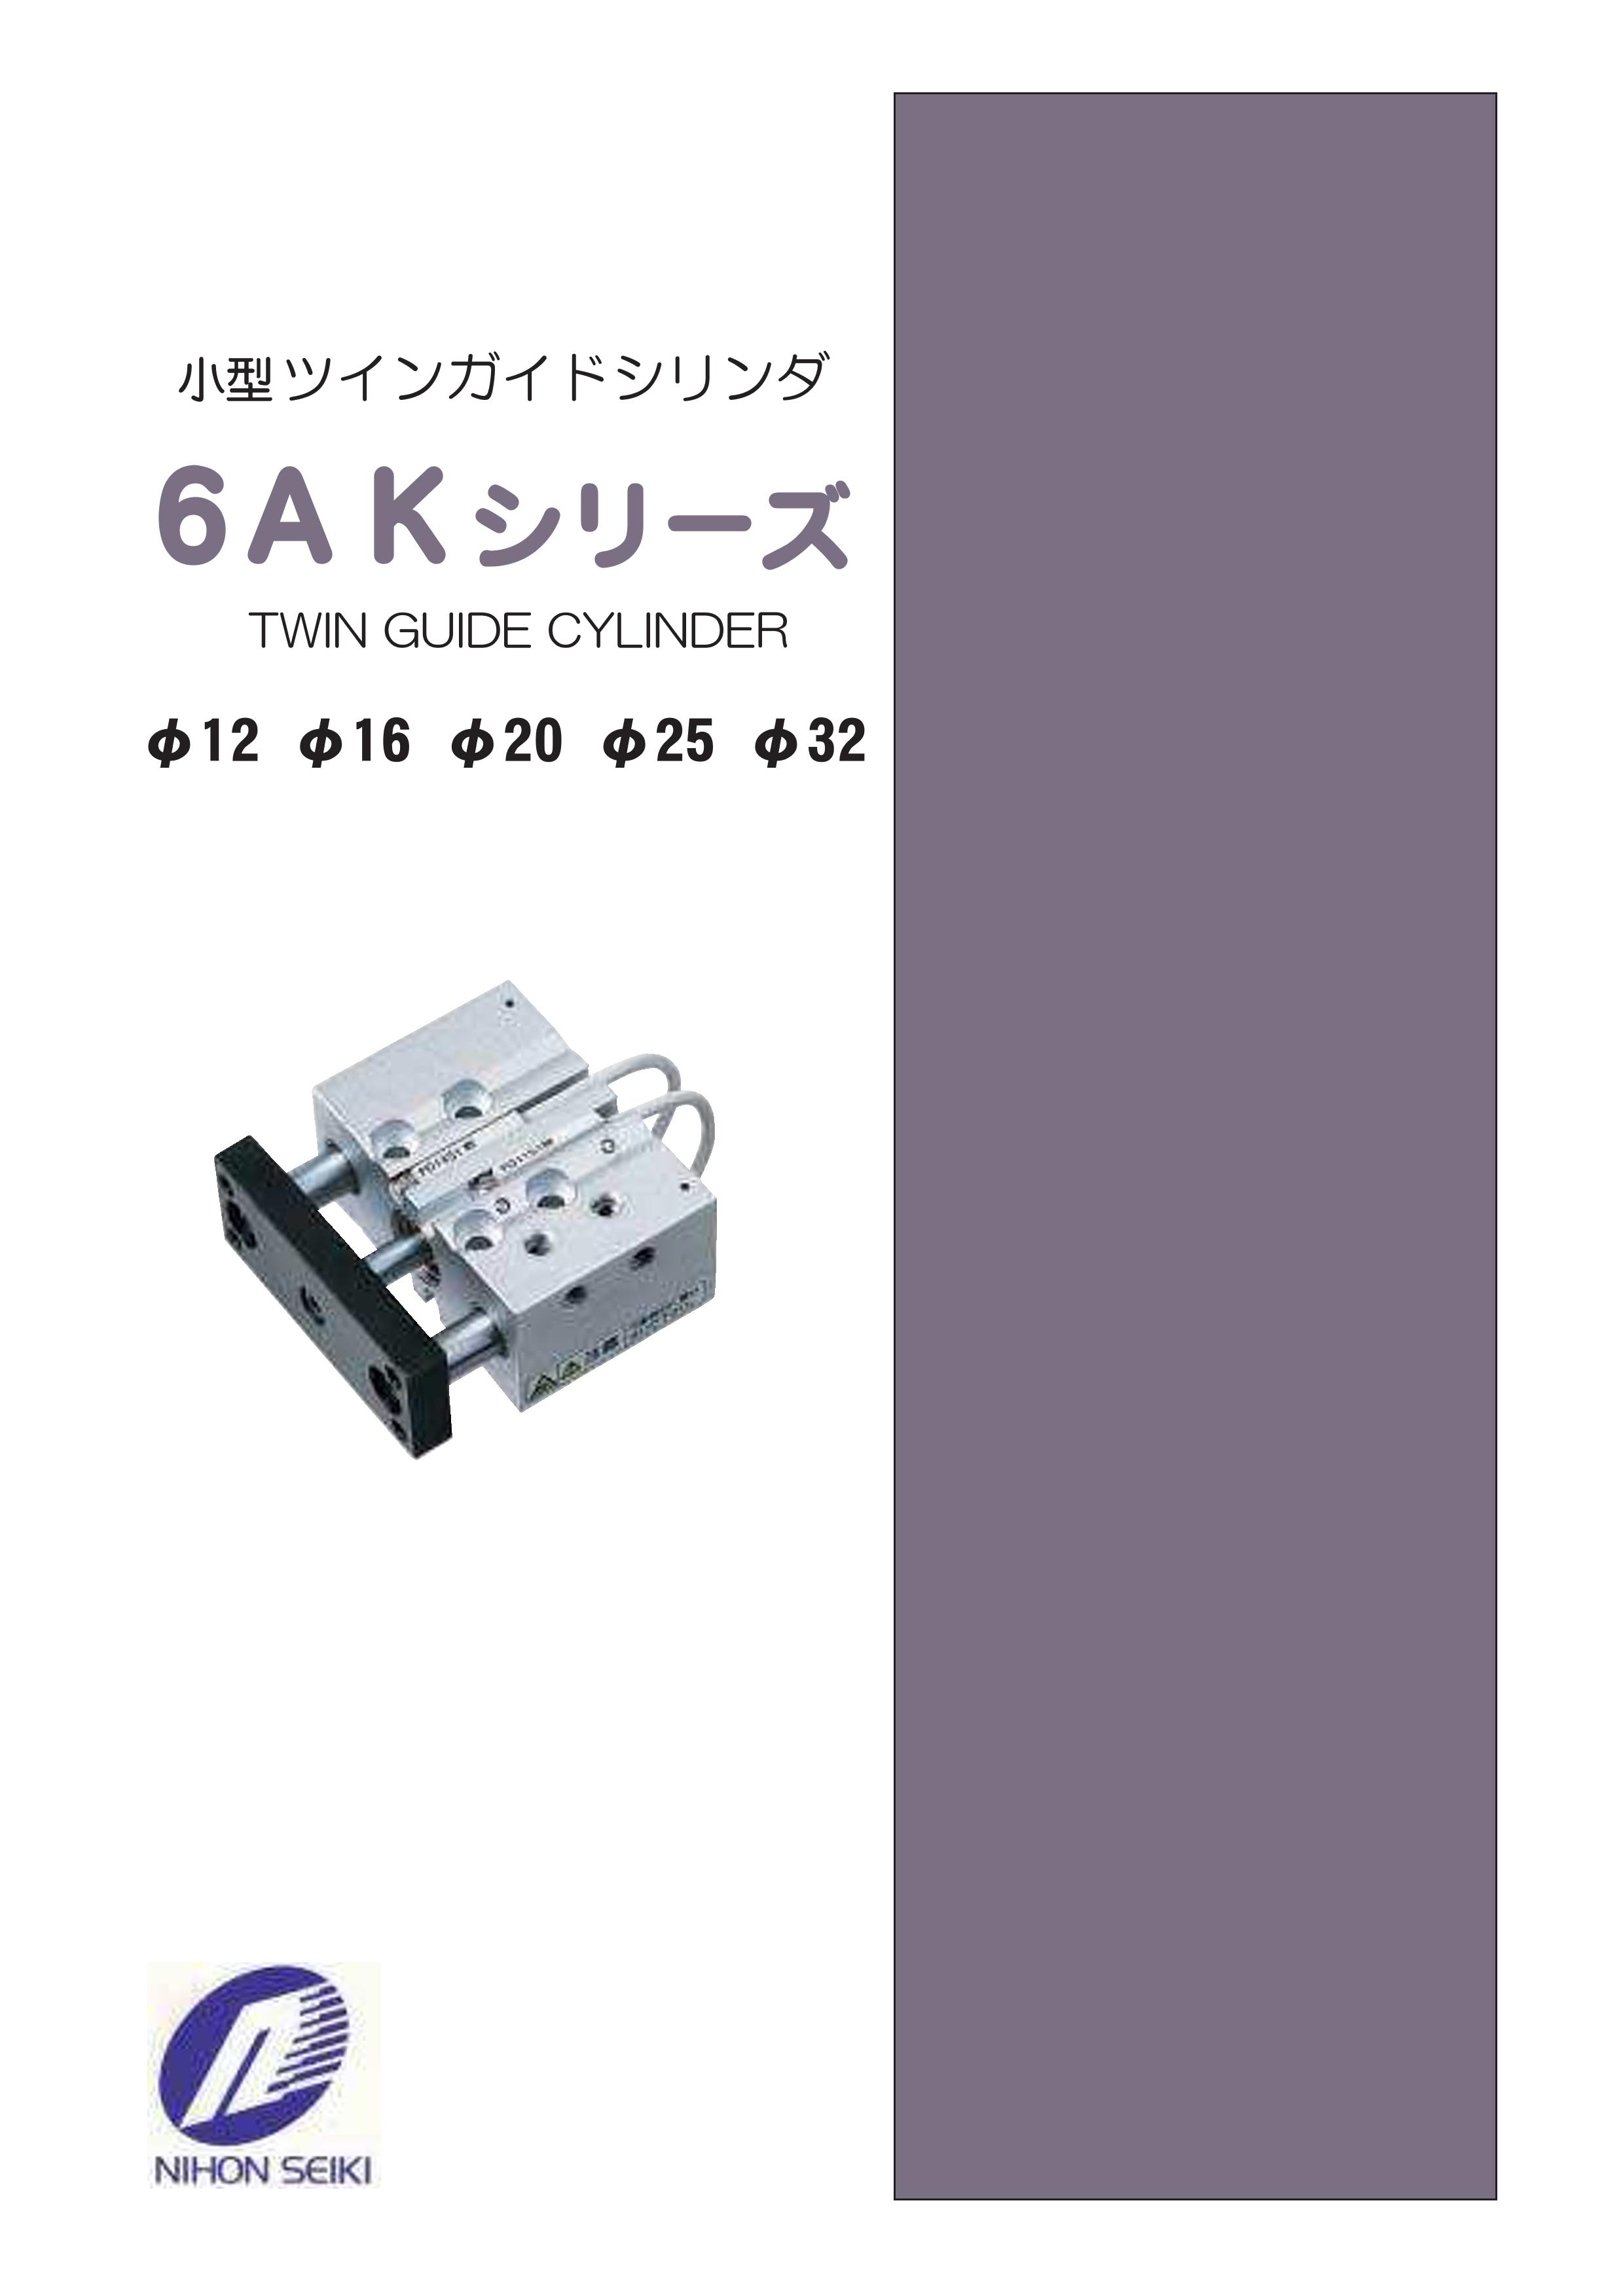 日本精器 高性能エアフィルタ用エレメント3ミクロン(CN3用) CN3E924 通販